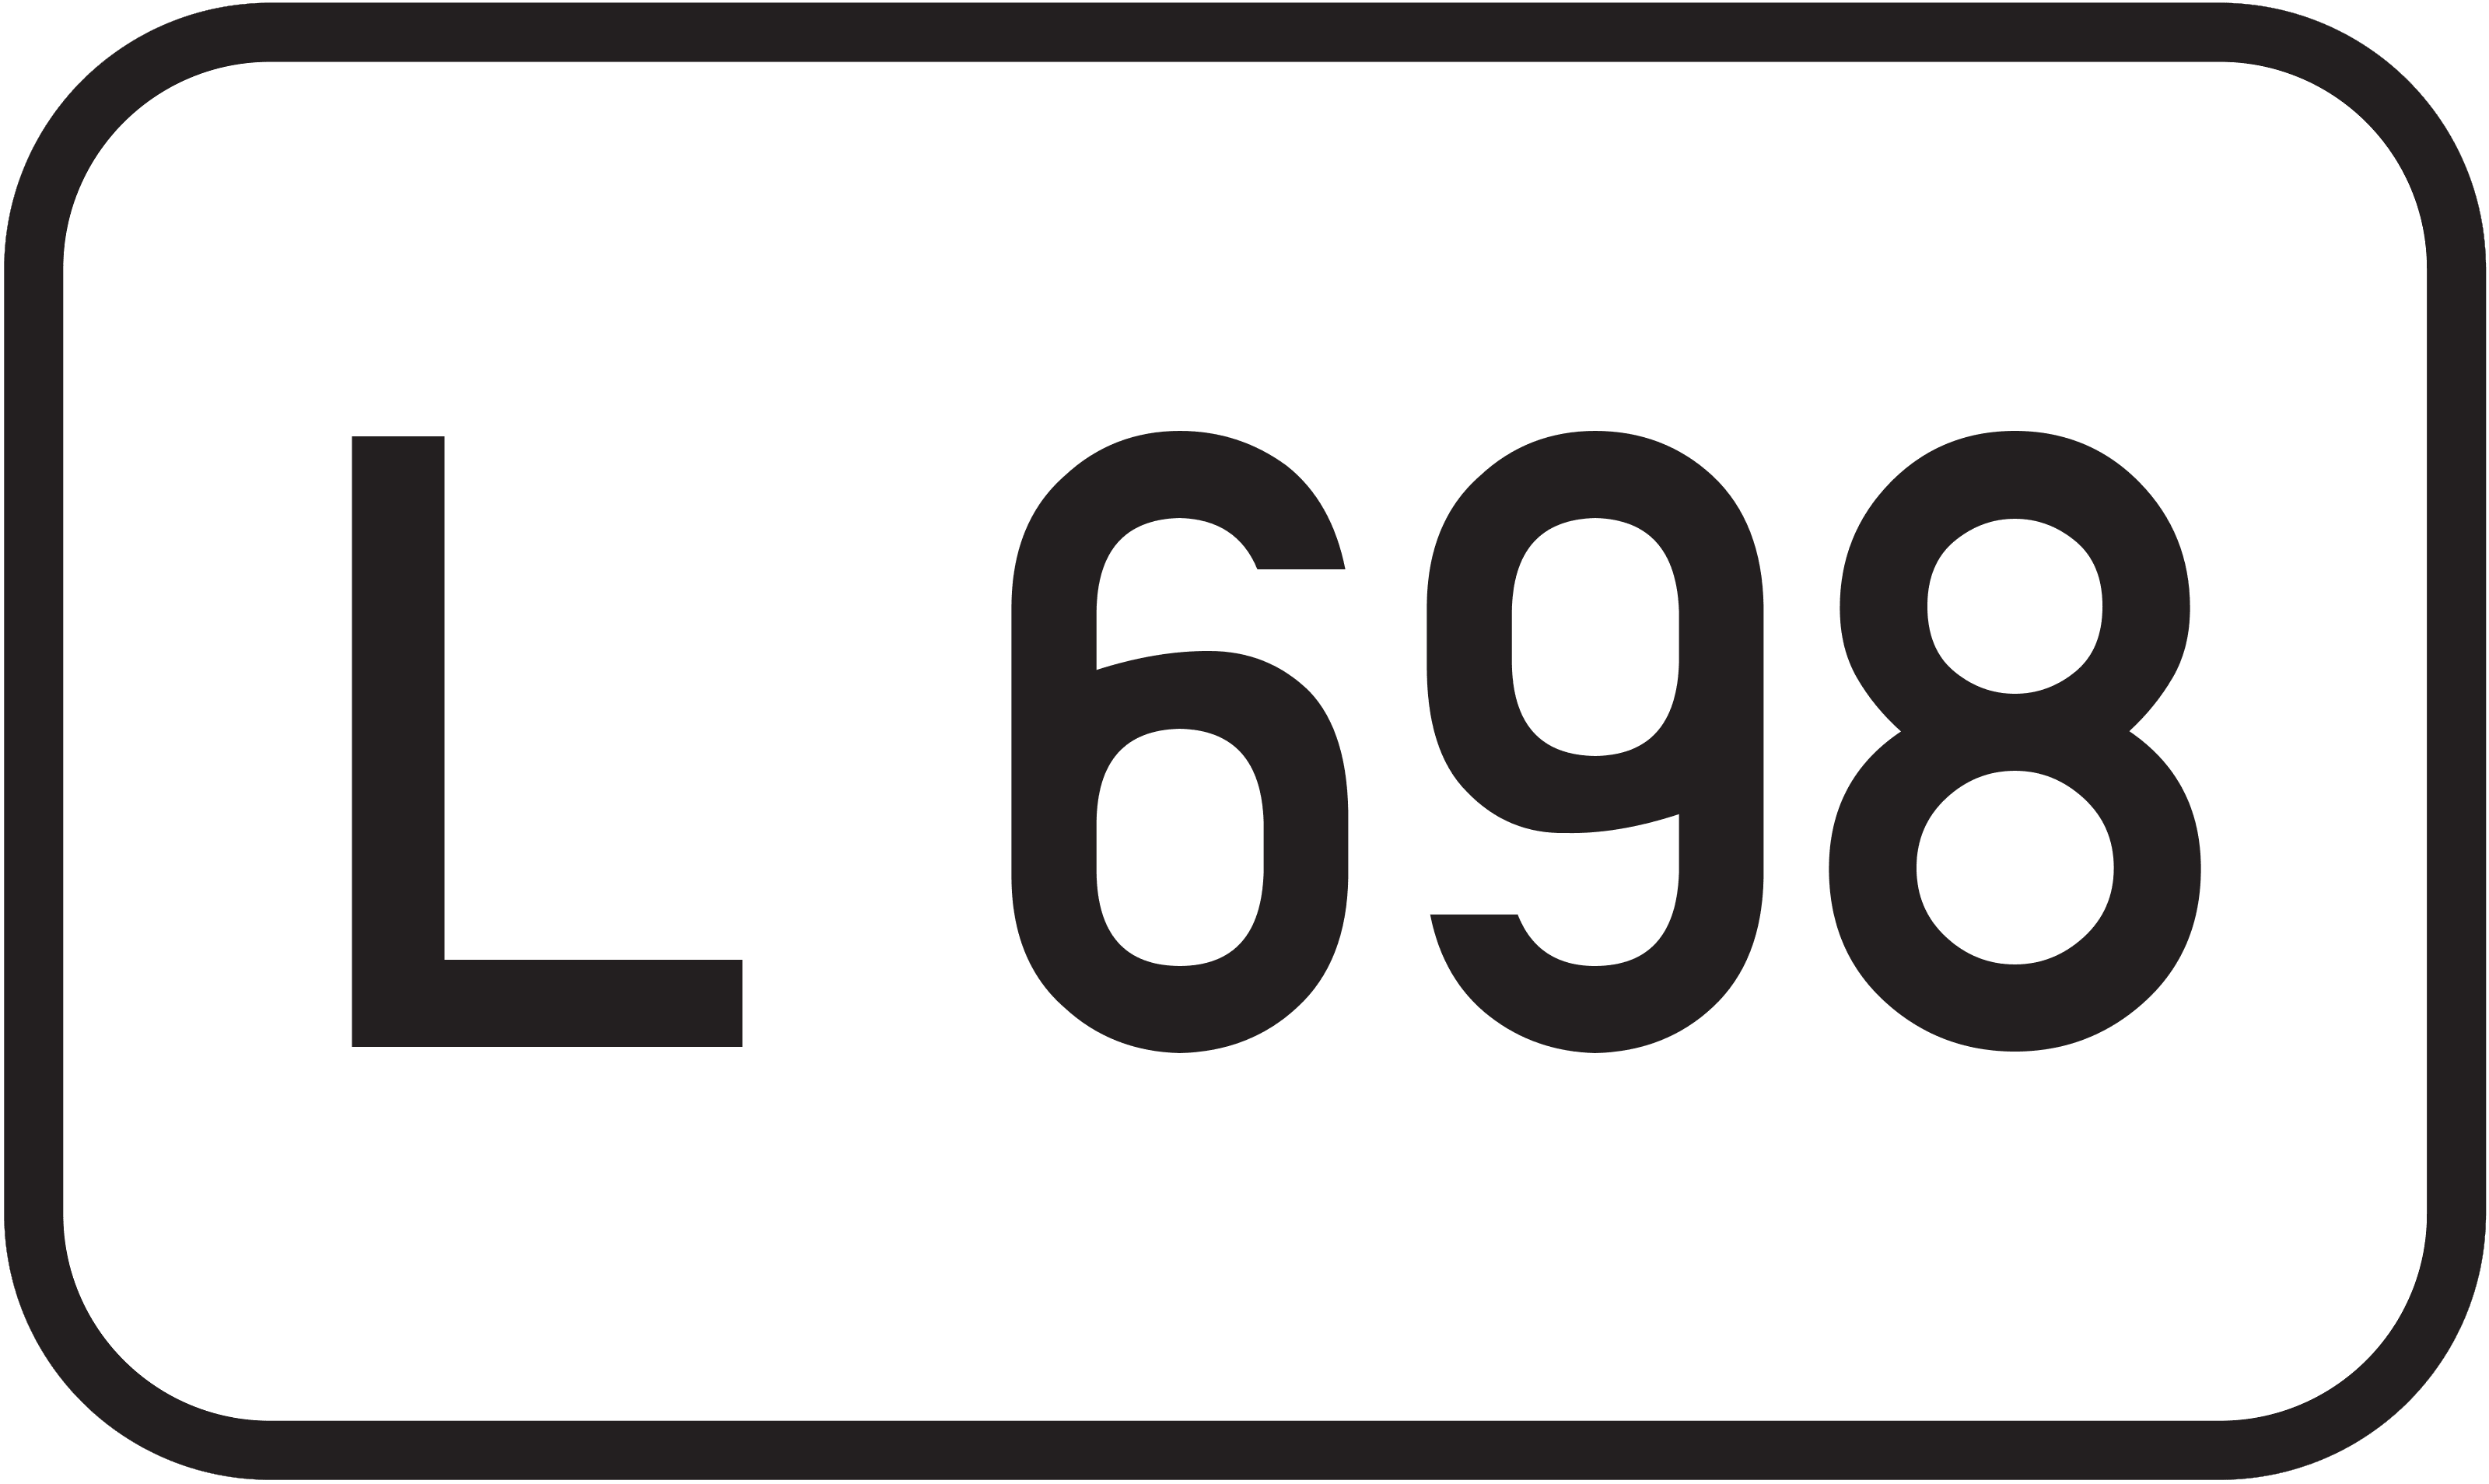 Landesstraße L 698